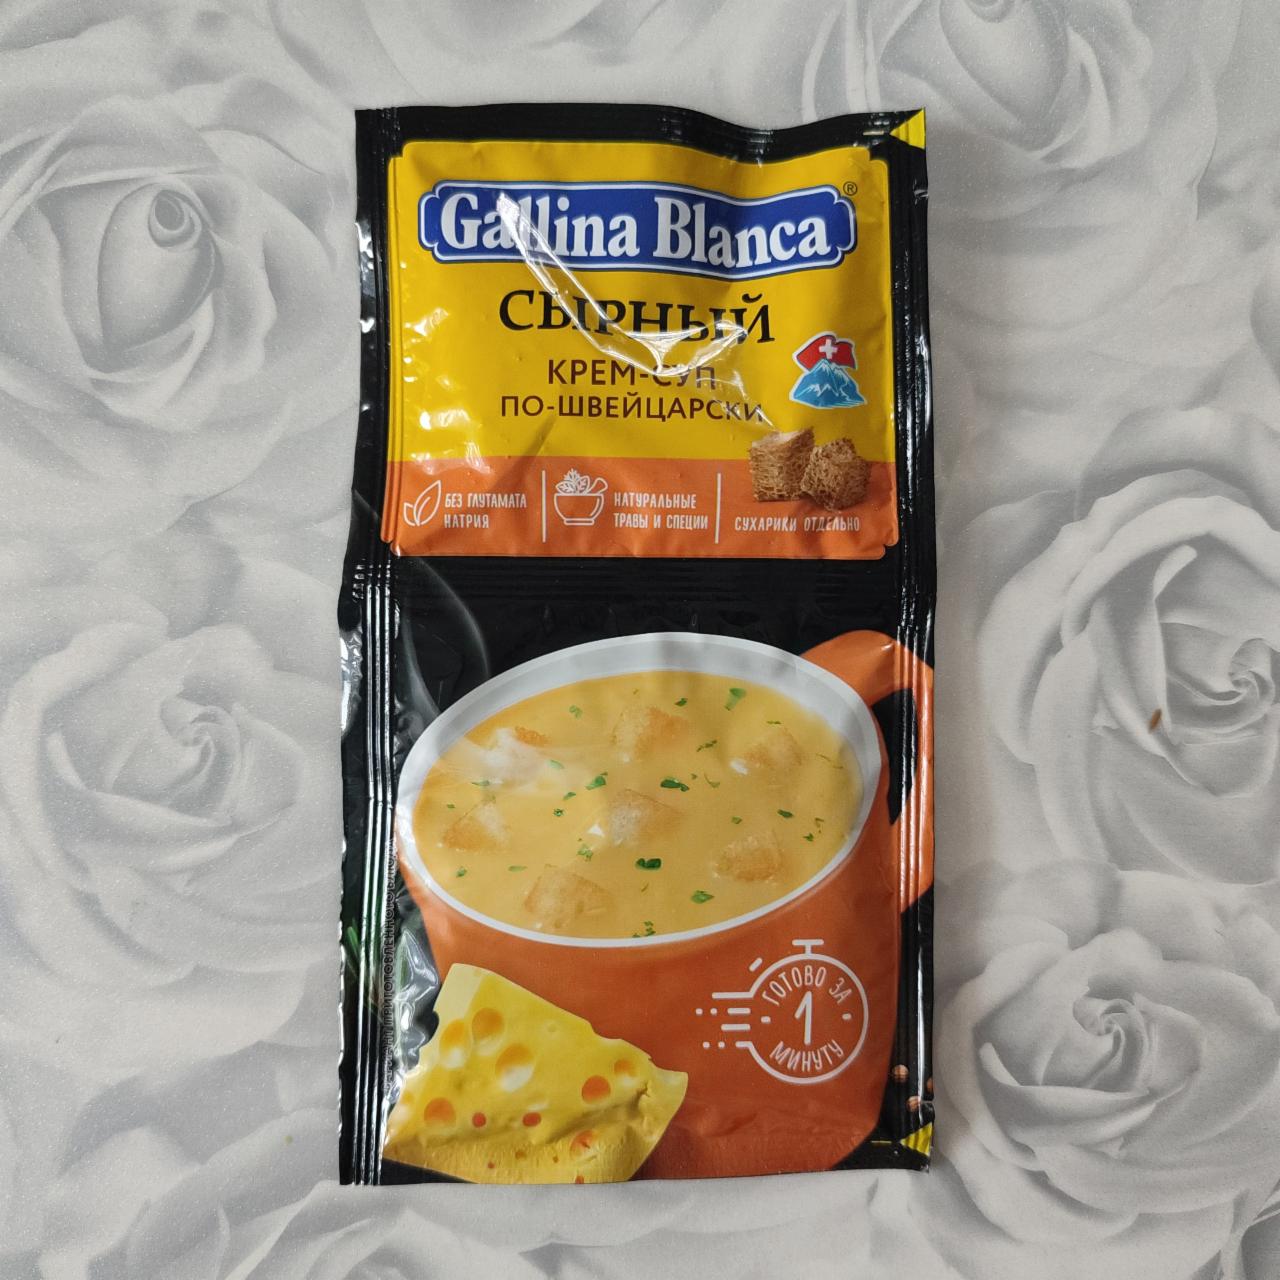 Фото - Сырный крем суп по-Швейцарски Gallina Blanca